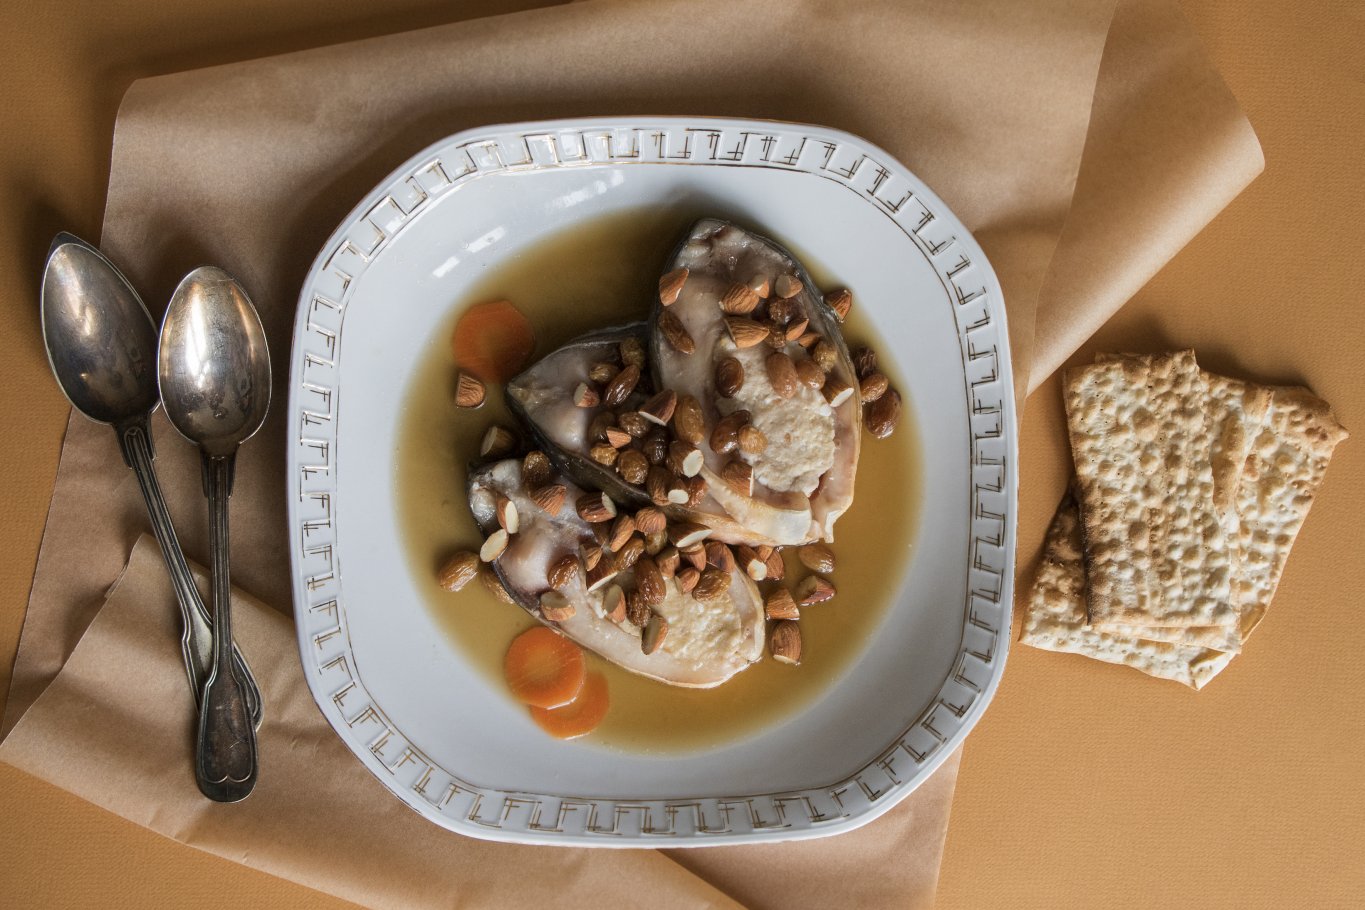 Głęboki, porcelanowy talerz wypełniony karpiem po żydowsku. Obok talerza leżą dwie ozdobne łyżki oraz maca.